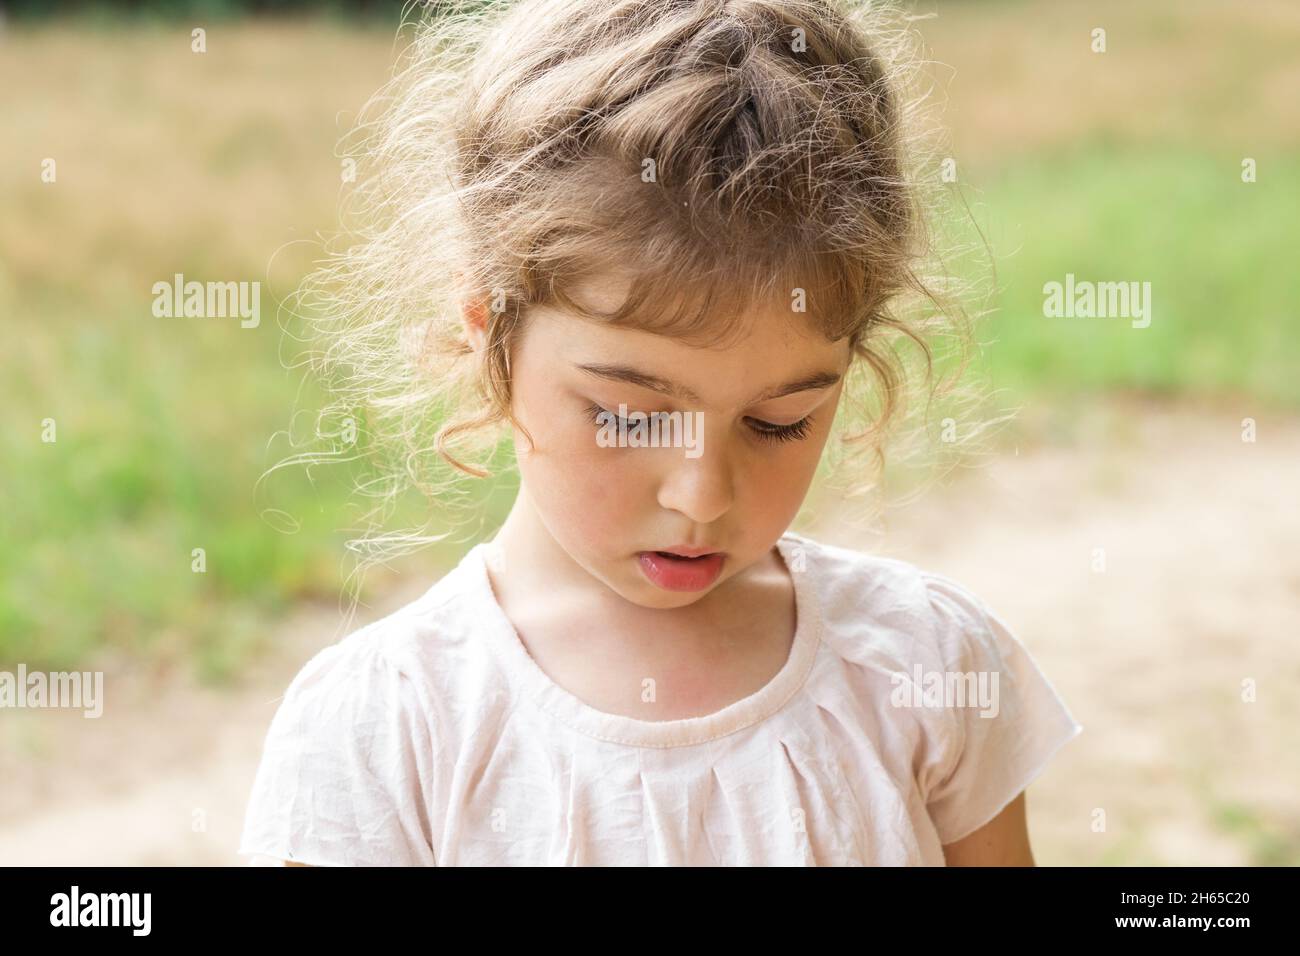 Scheide Kinder Fotos Und Bildmaterial In Hoher Auflösung Alamy 